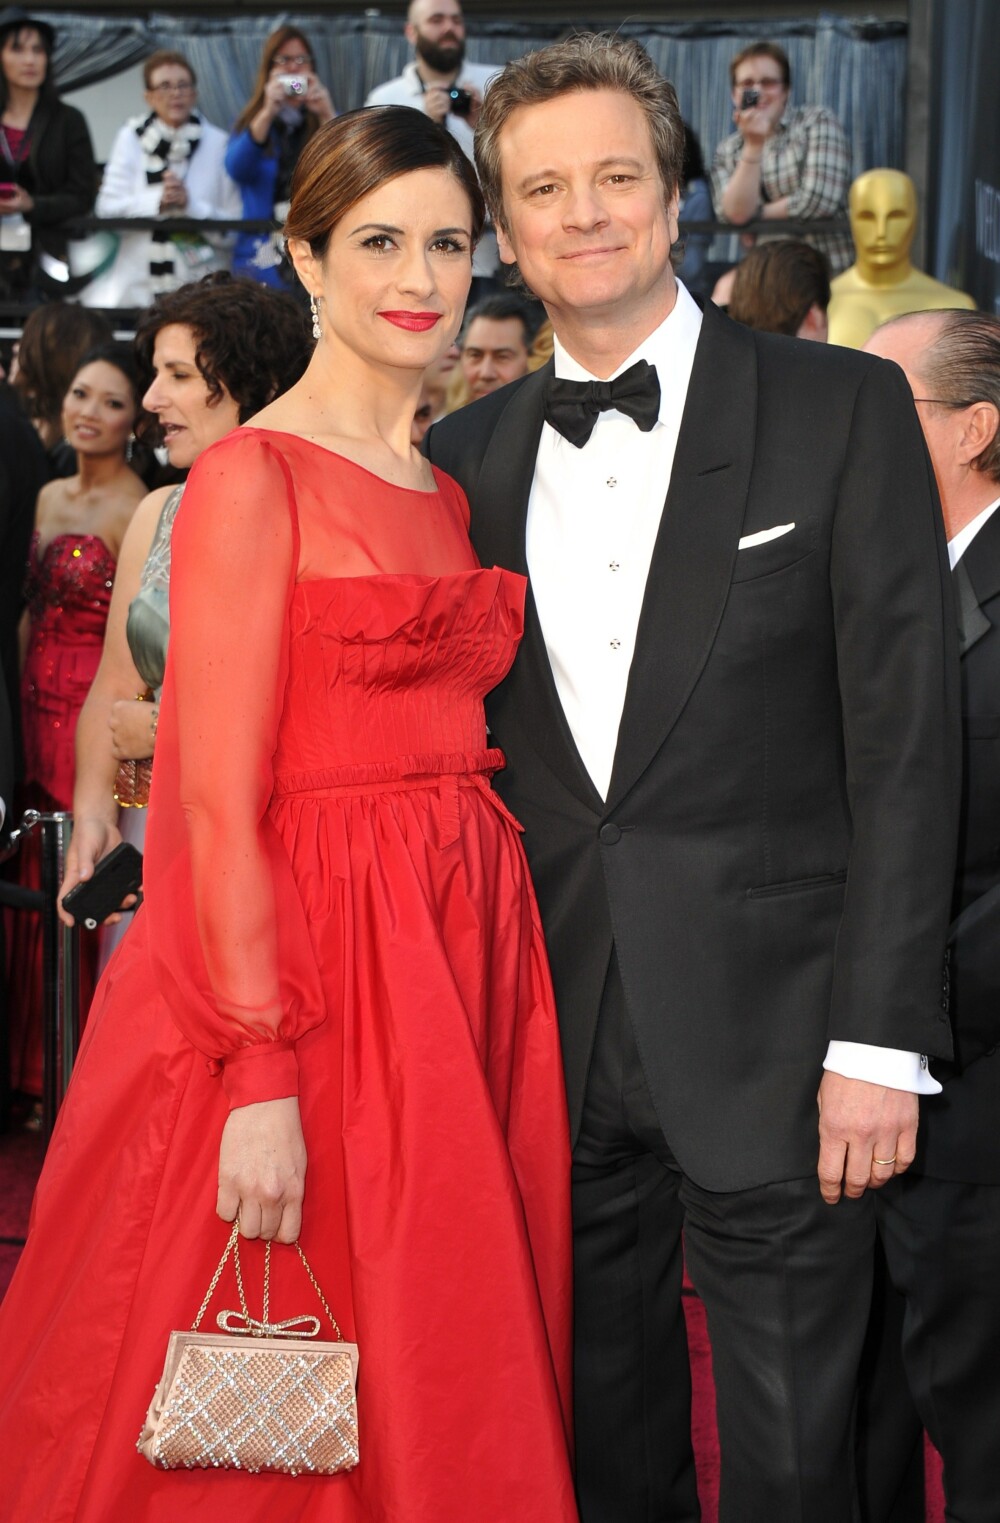 Defilarea starurilor pe covorul rosu, la Oscar 2012. Ce rochii au purtat vedetele. FOTO - Imaginea 15